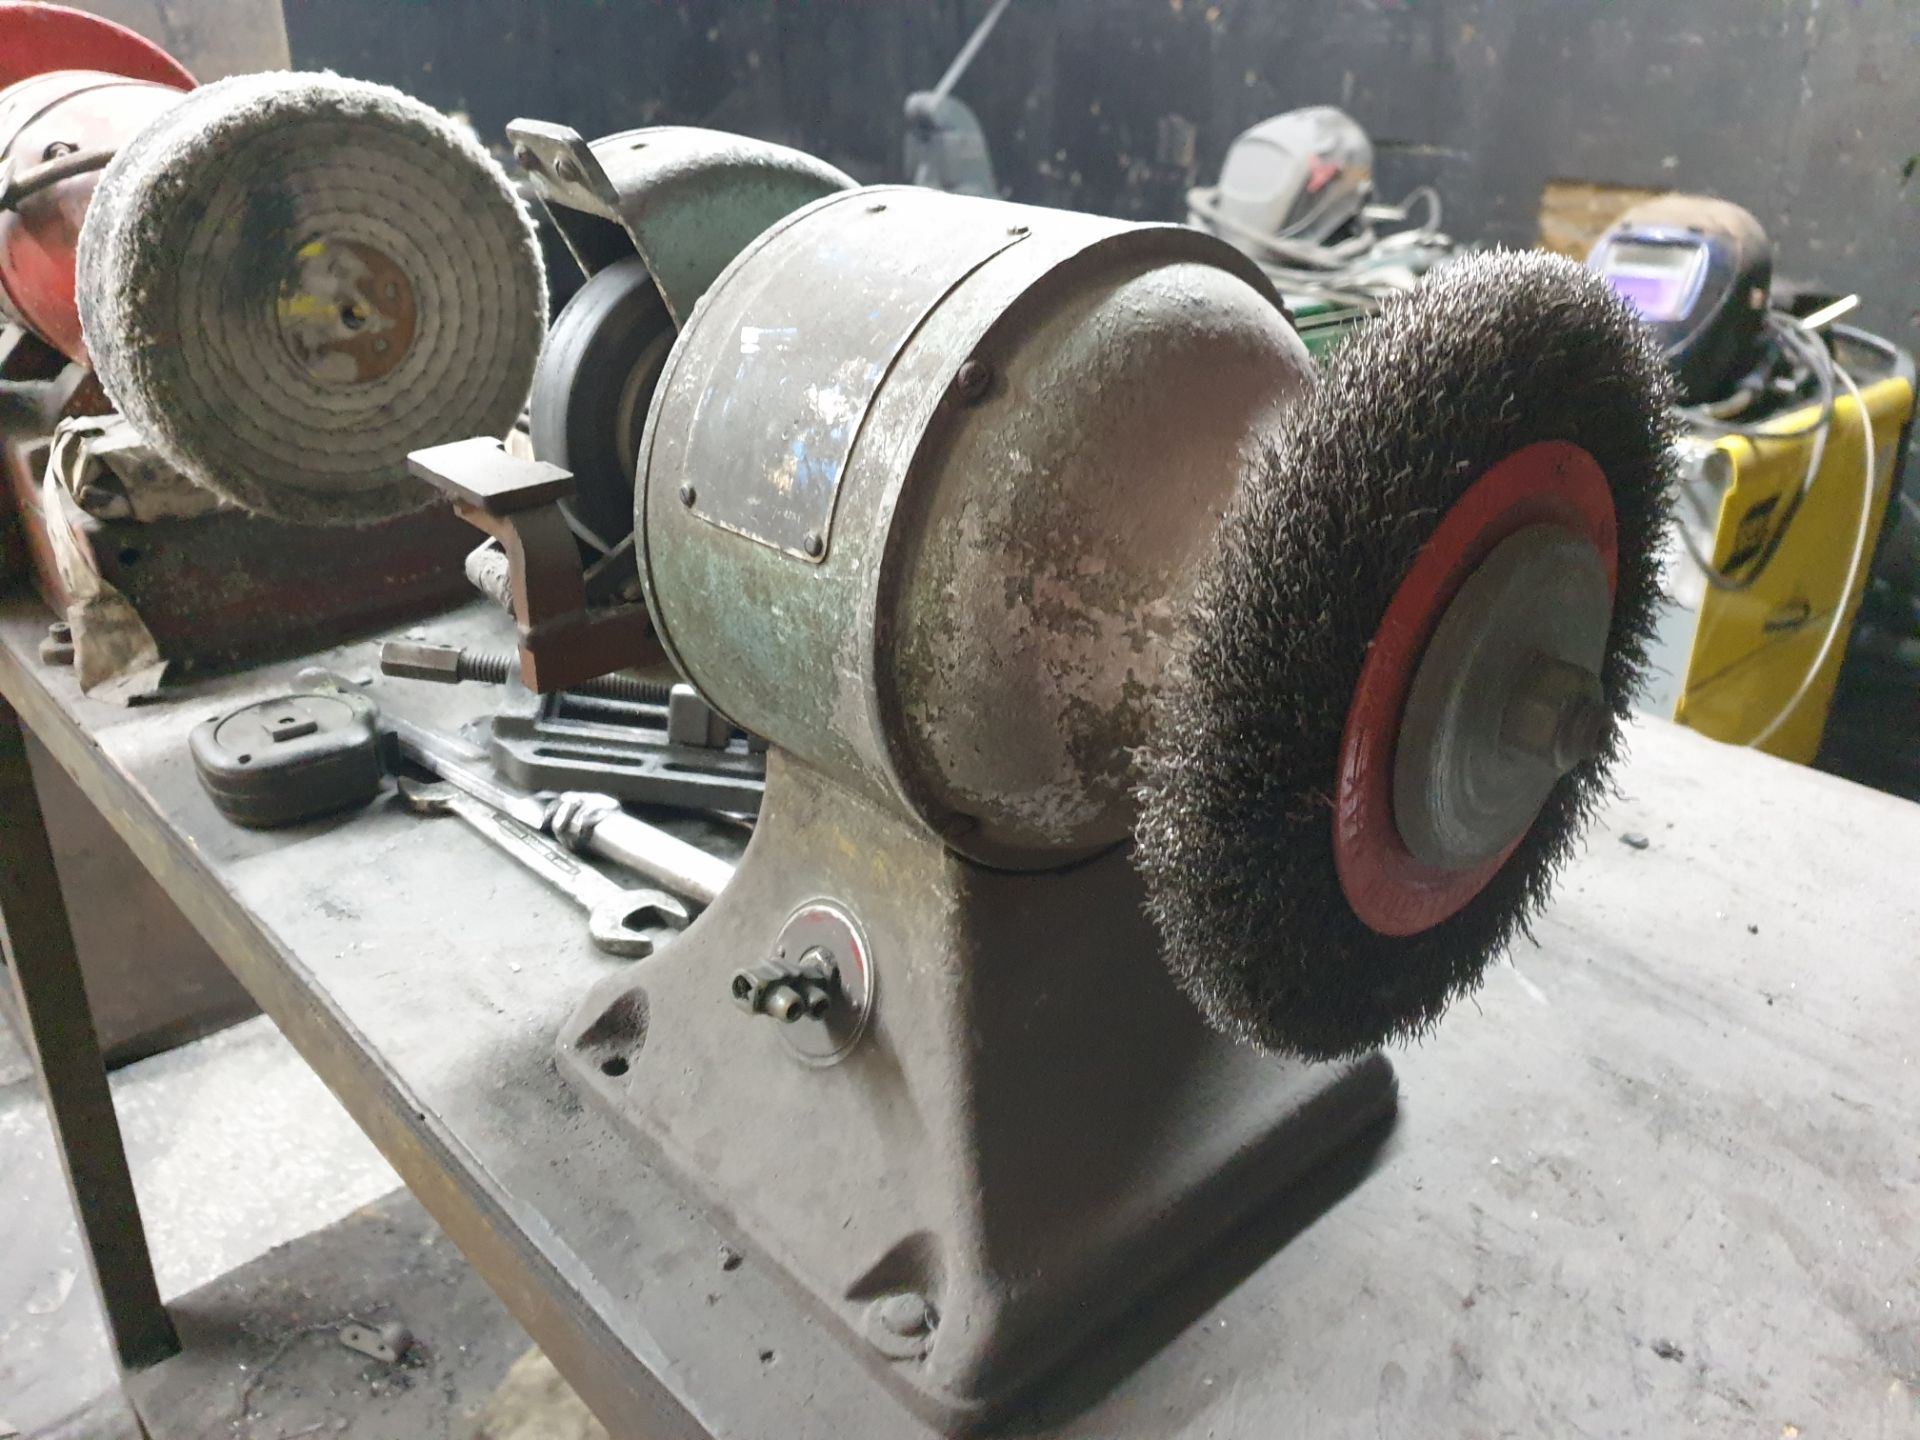 bench top grinder / polisher - Image 2 of 3